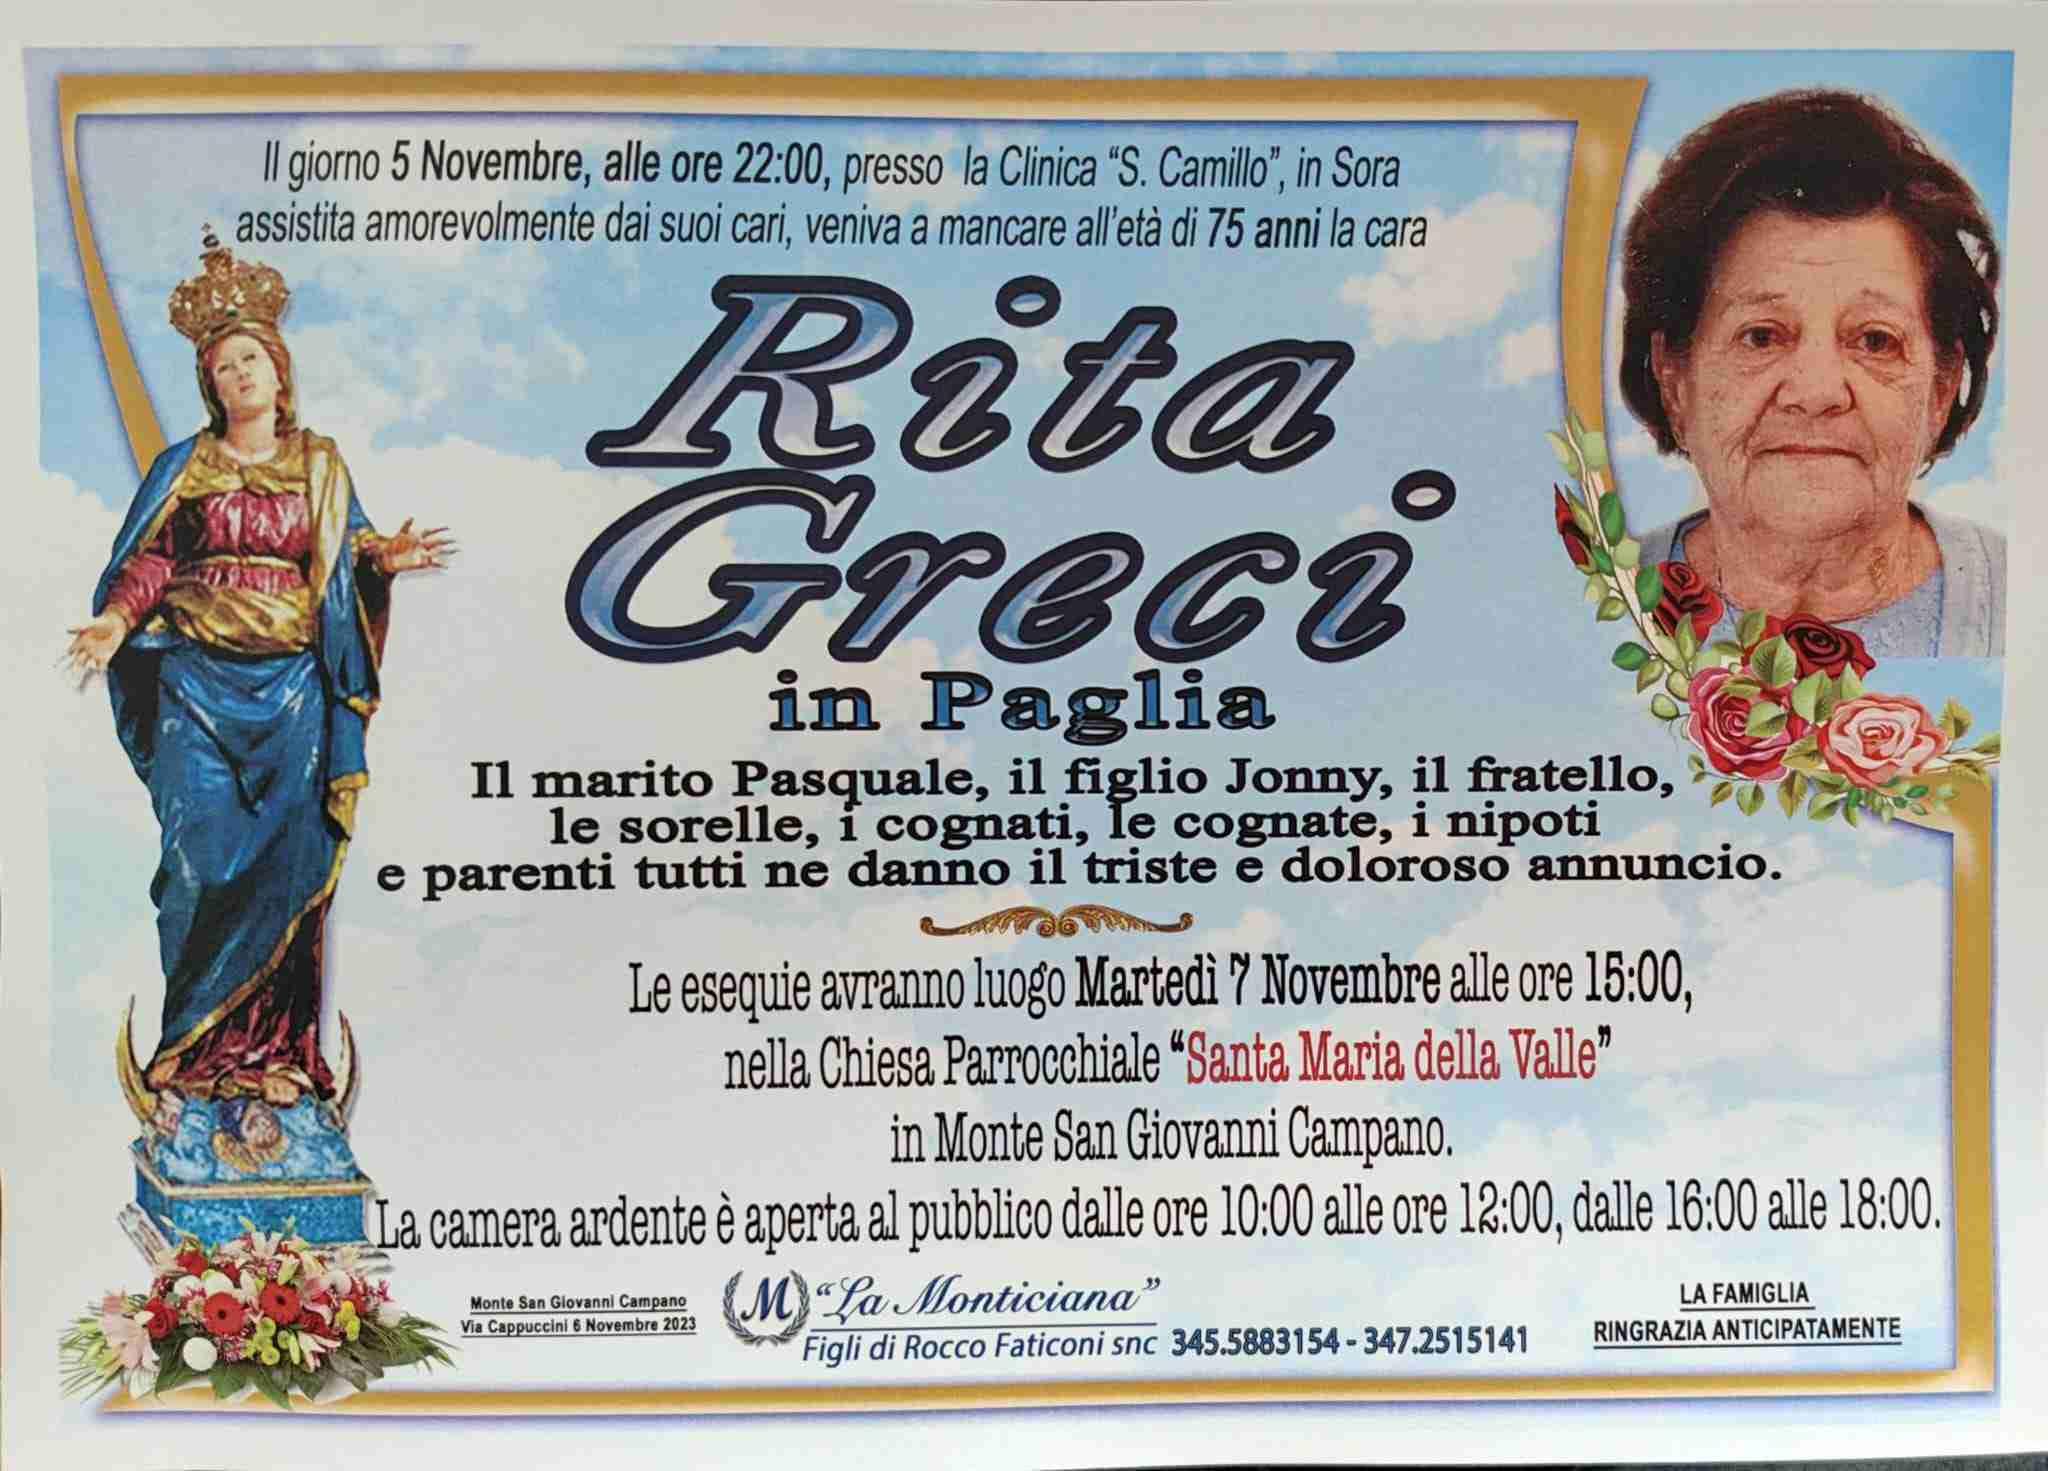 Rita Greci